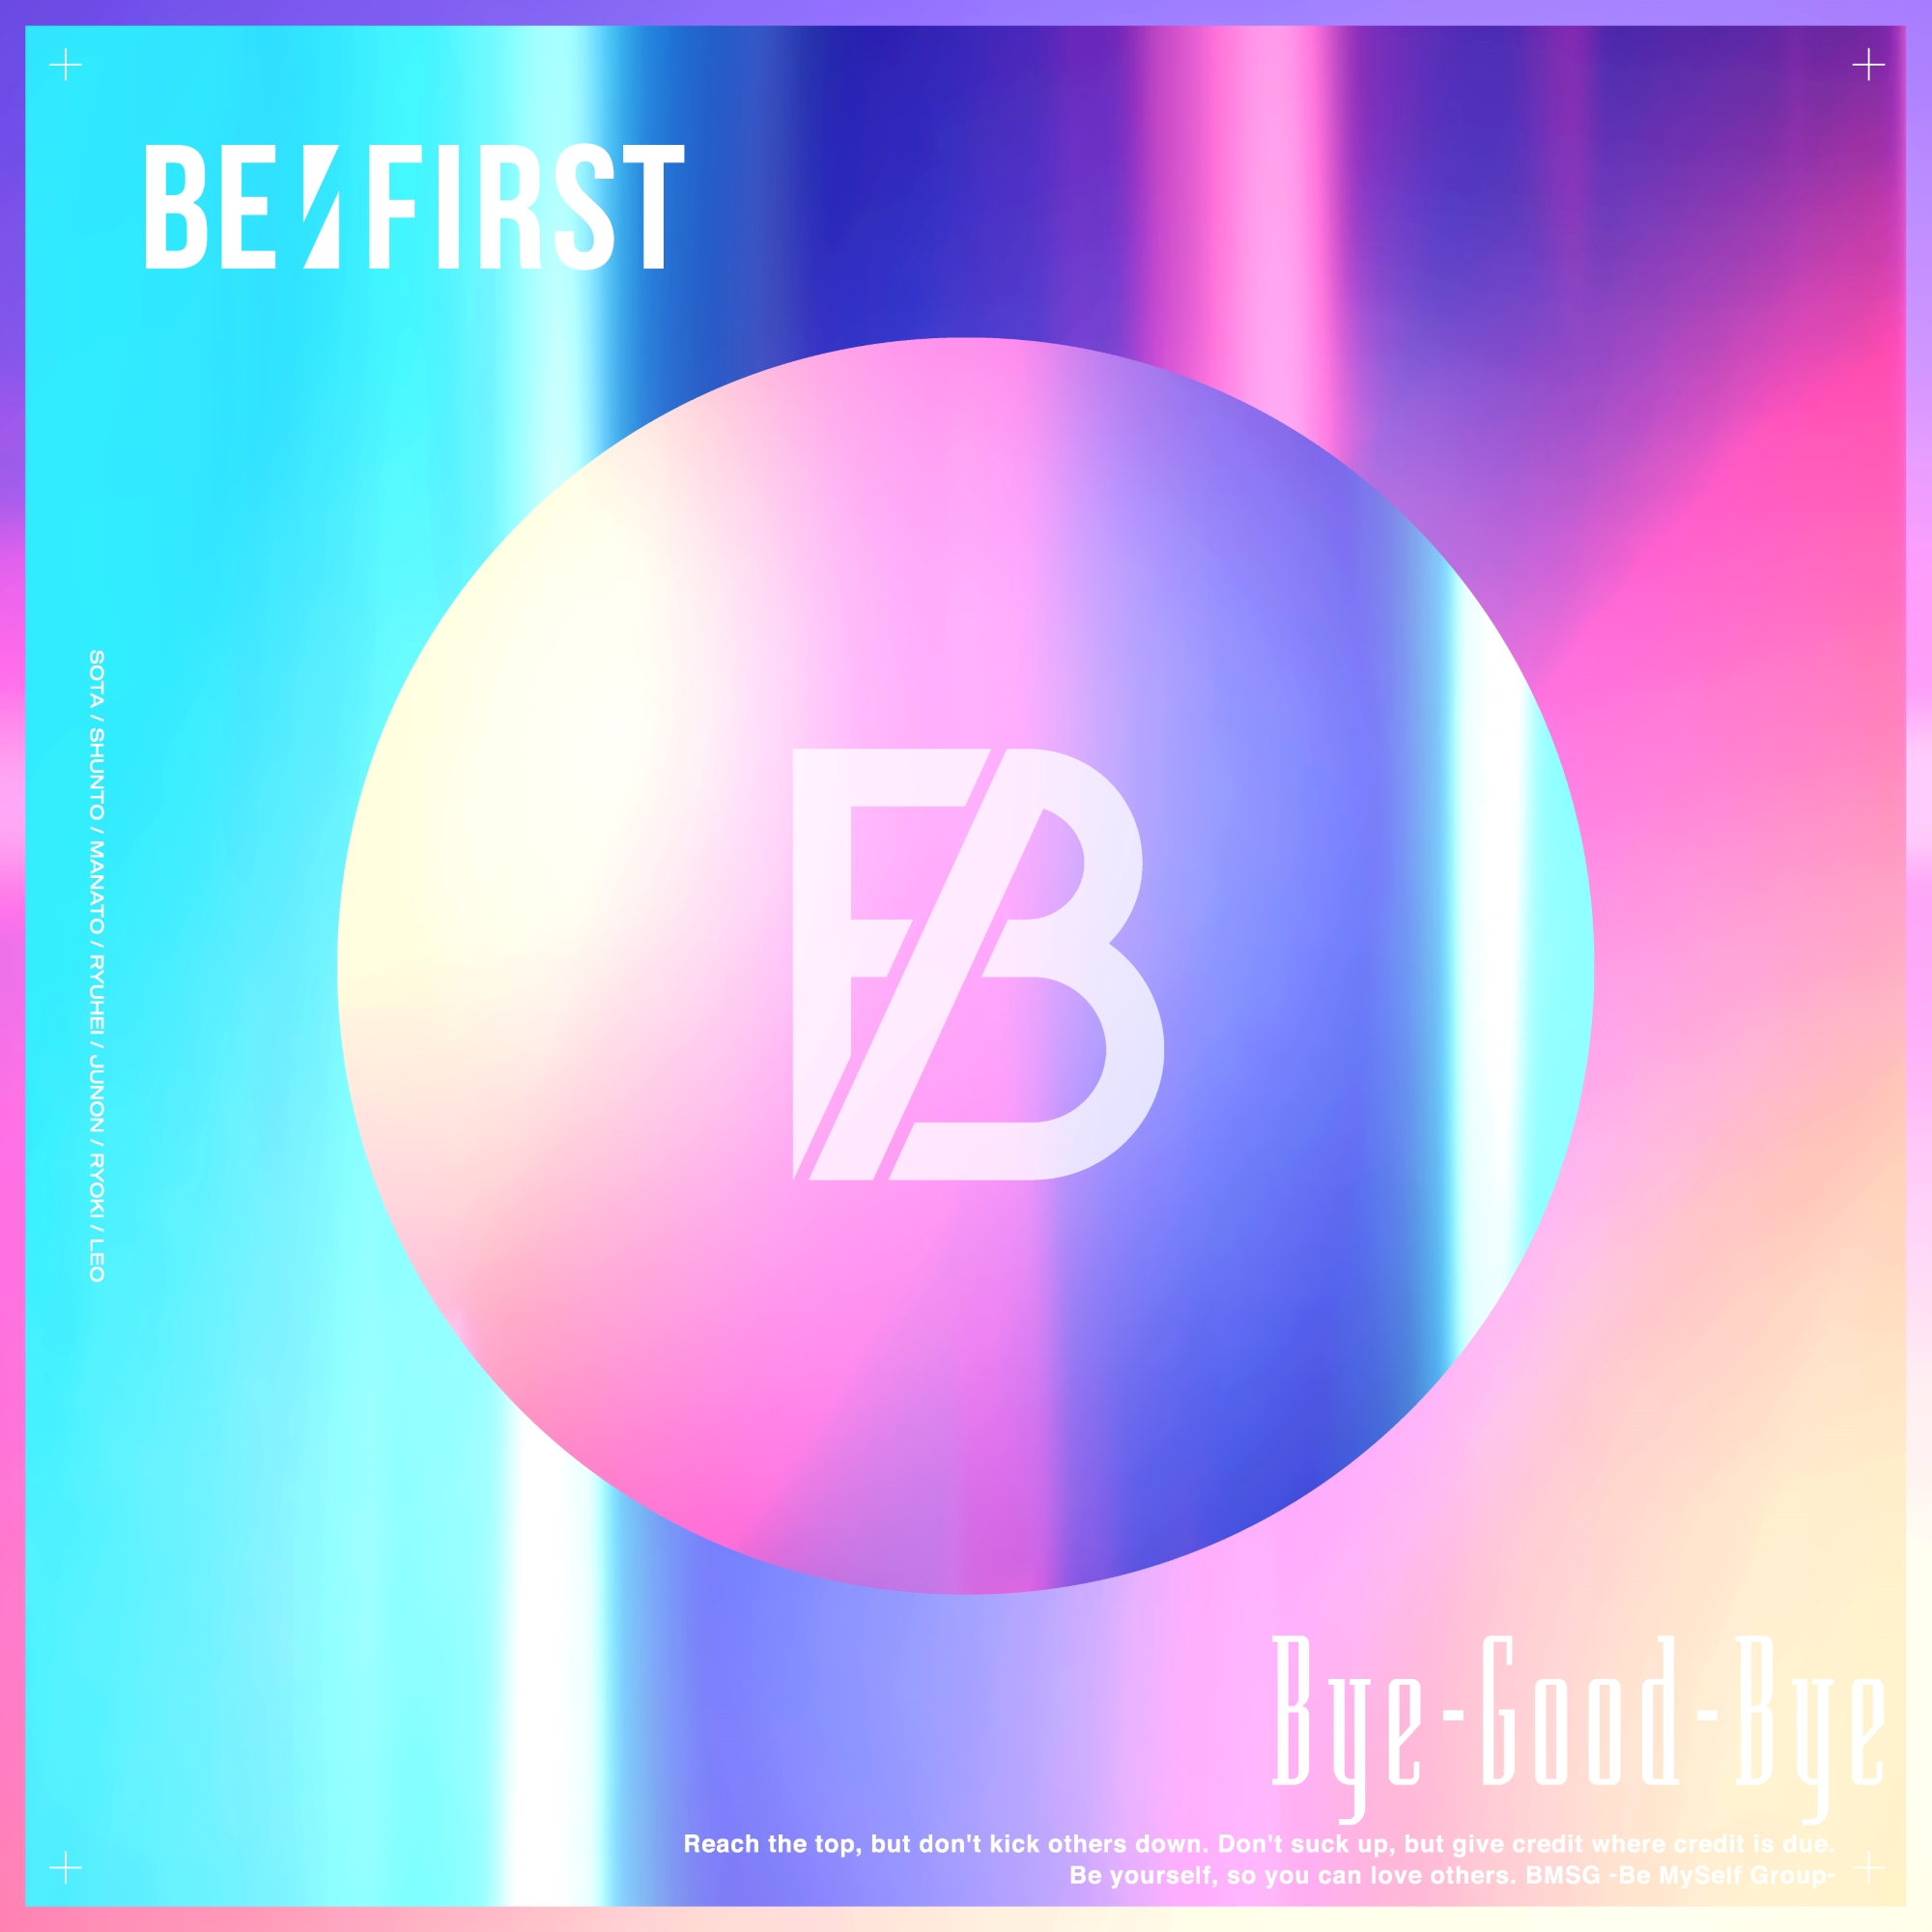 BE:FIRST Bye-Good-Bye (BMSG限定盤）DVD付きBEFI - 邦楽